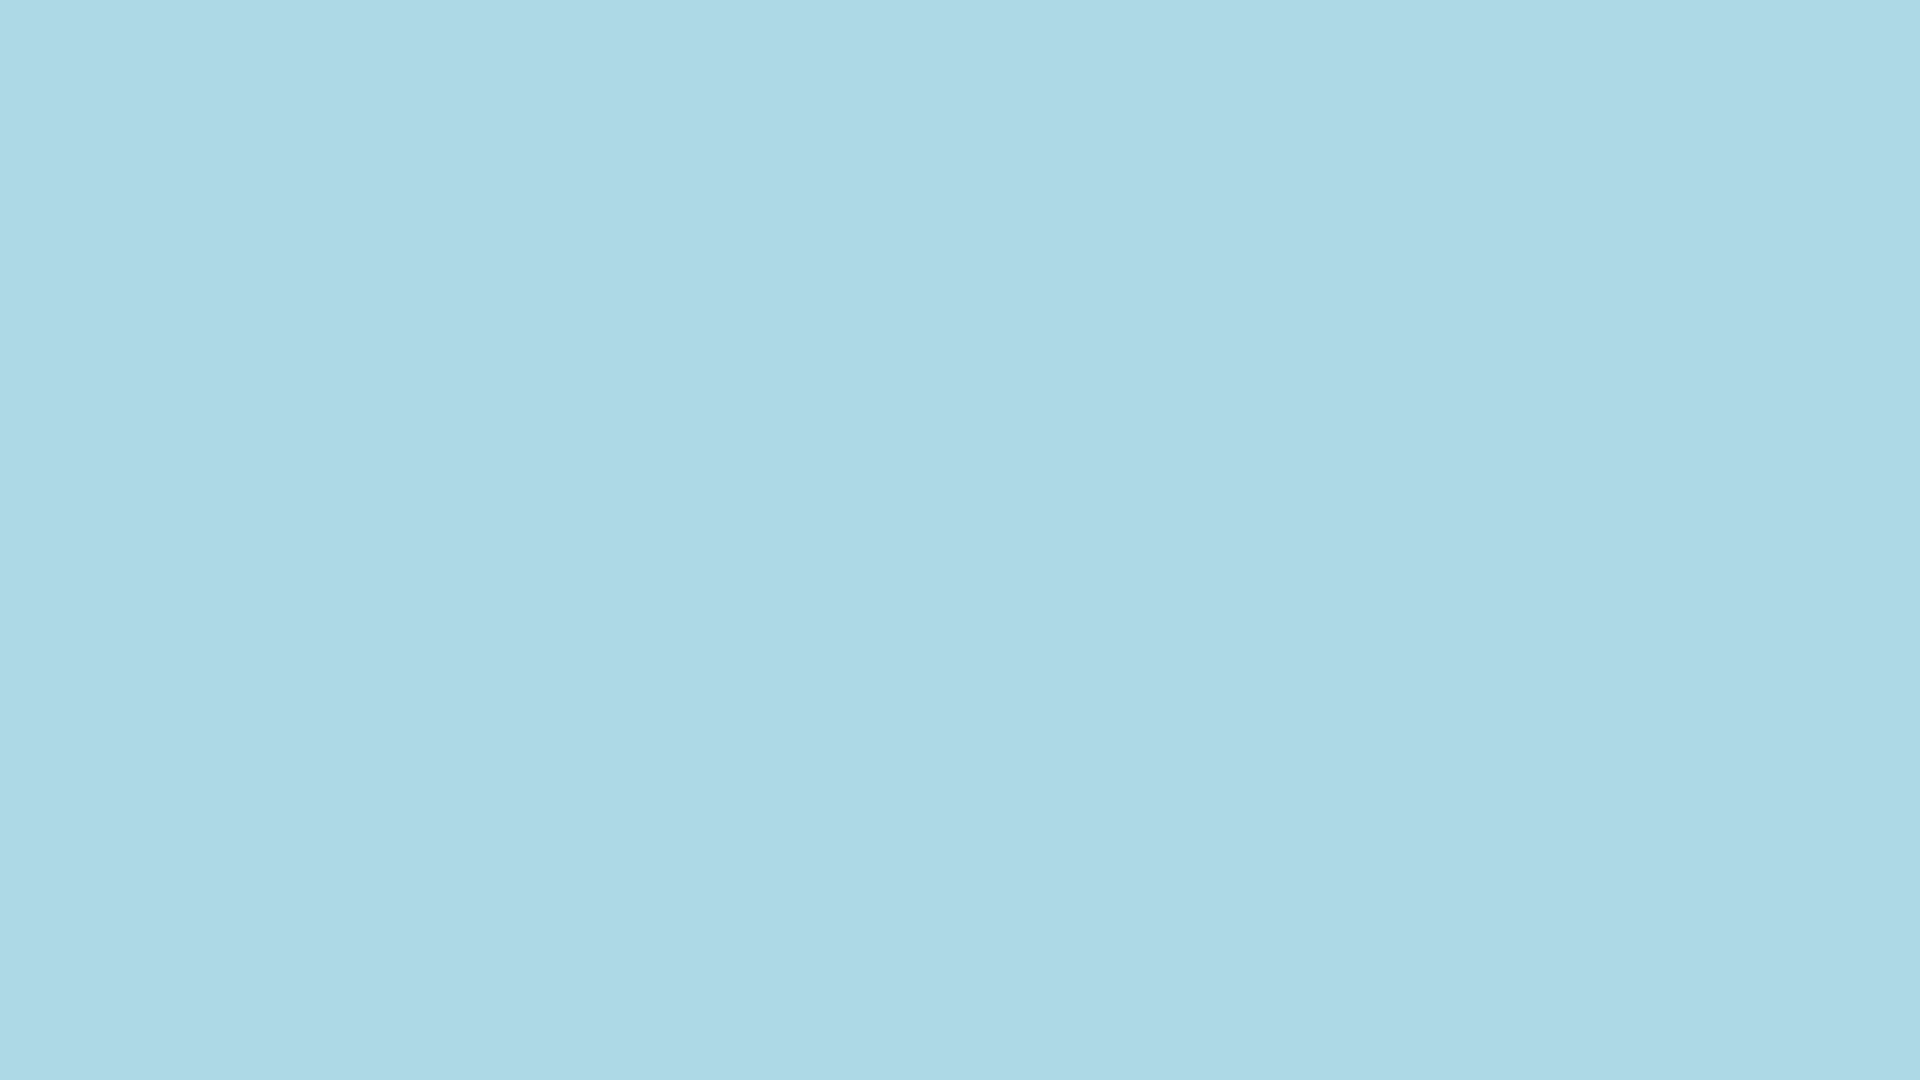 1920×1080-light-blue-solid-color-background